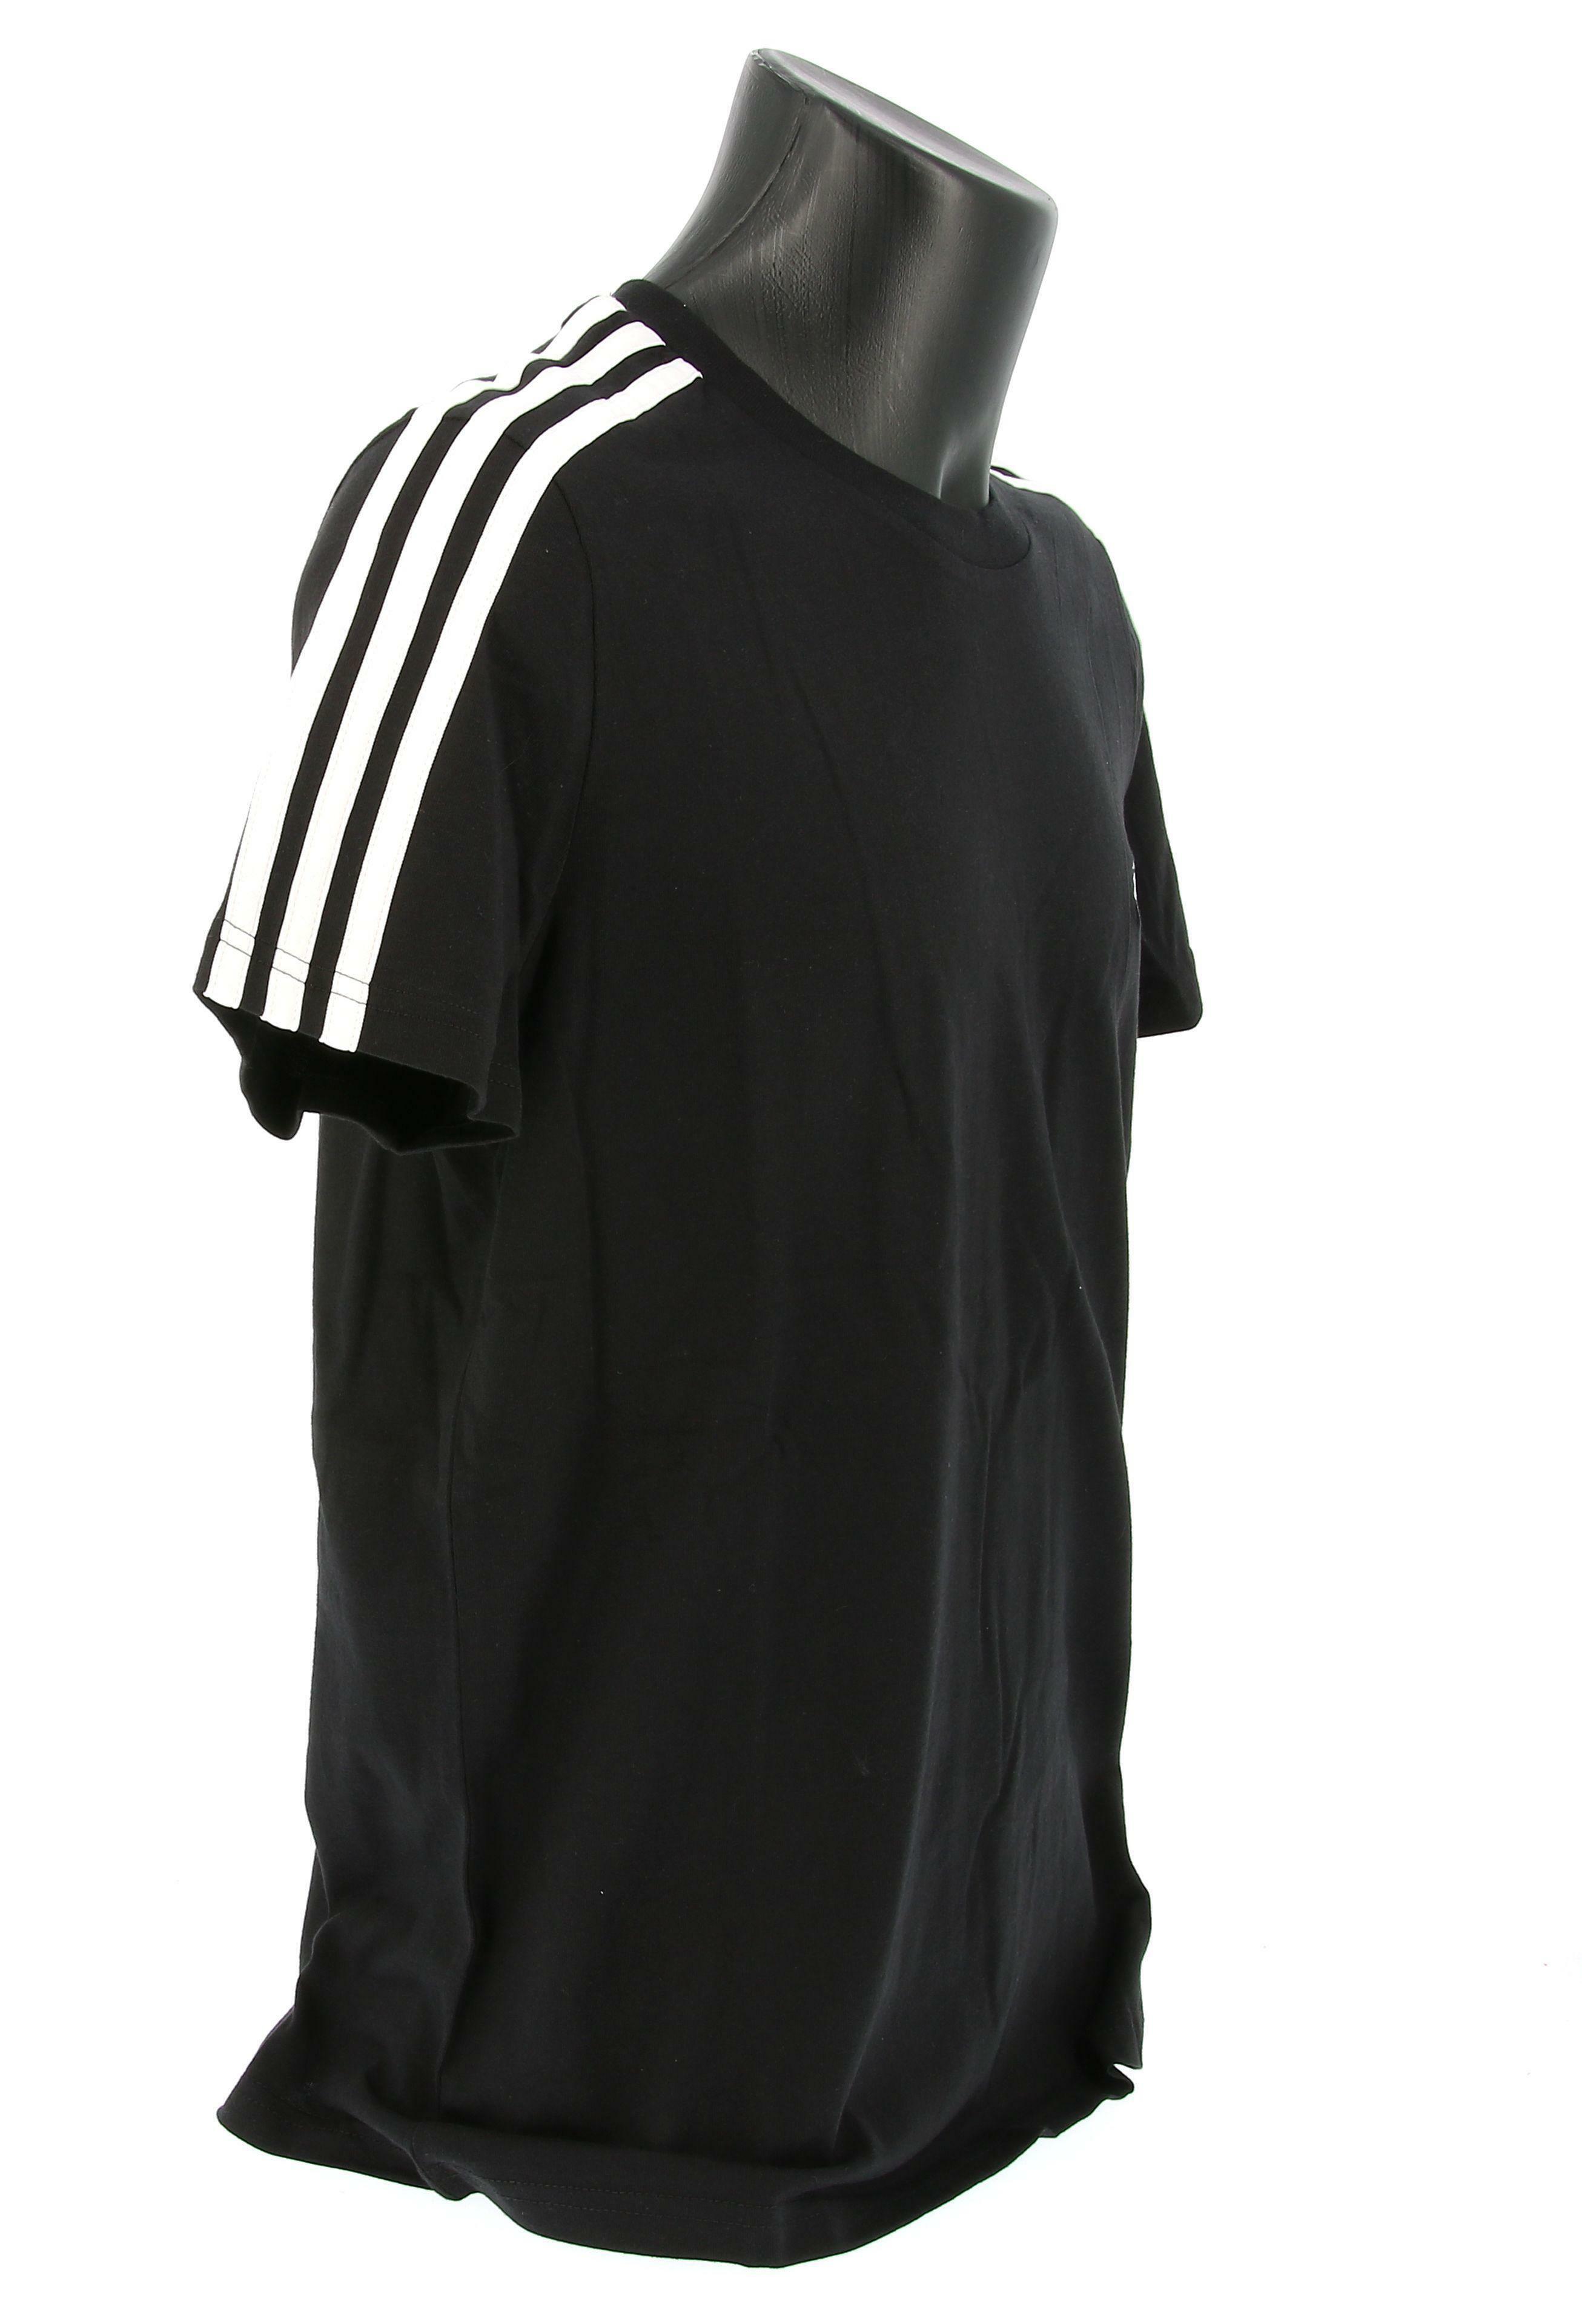 adidas t-shirt adidas gl0784. unisex,colore nero